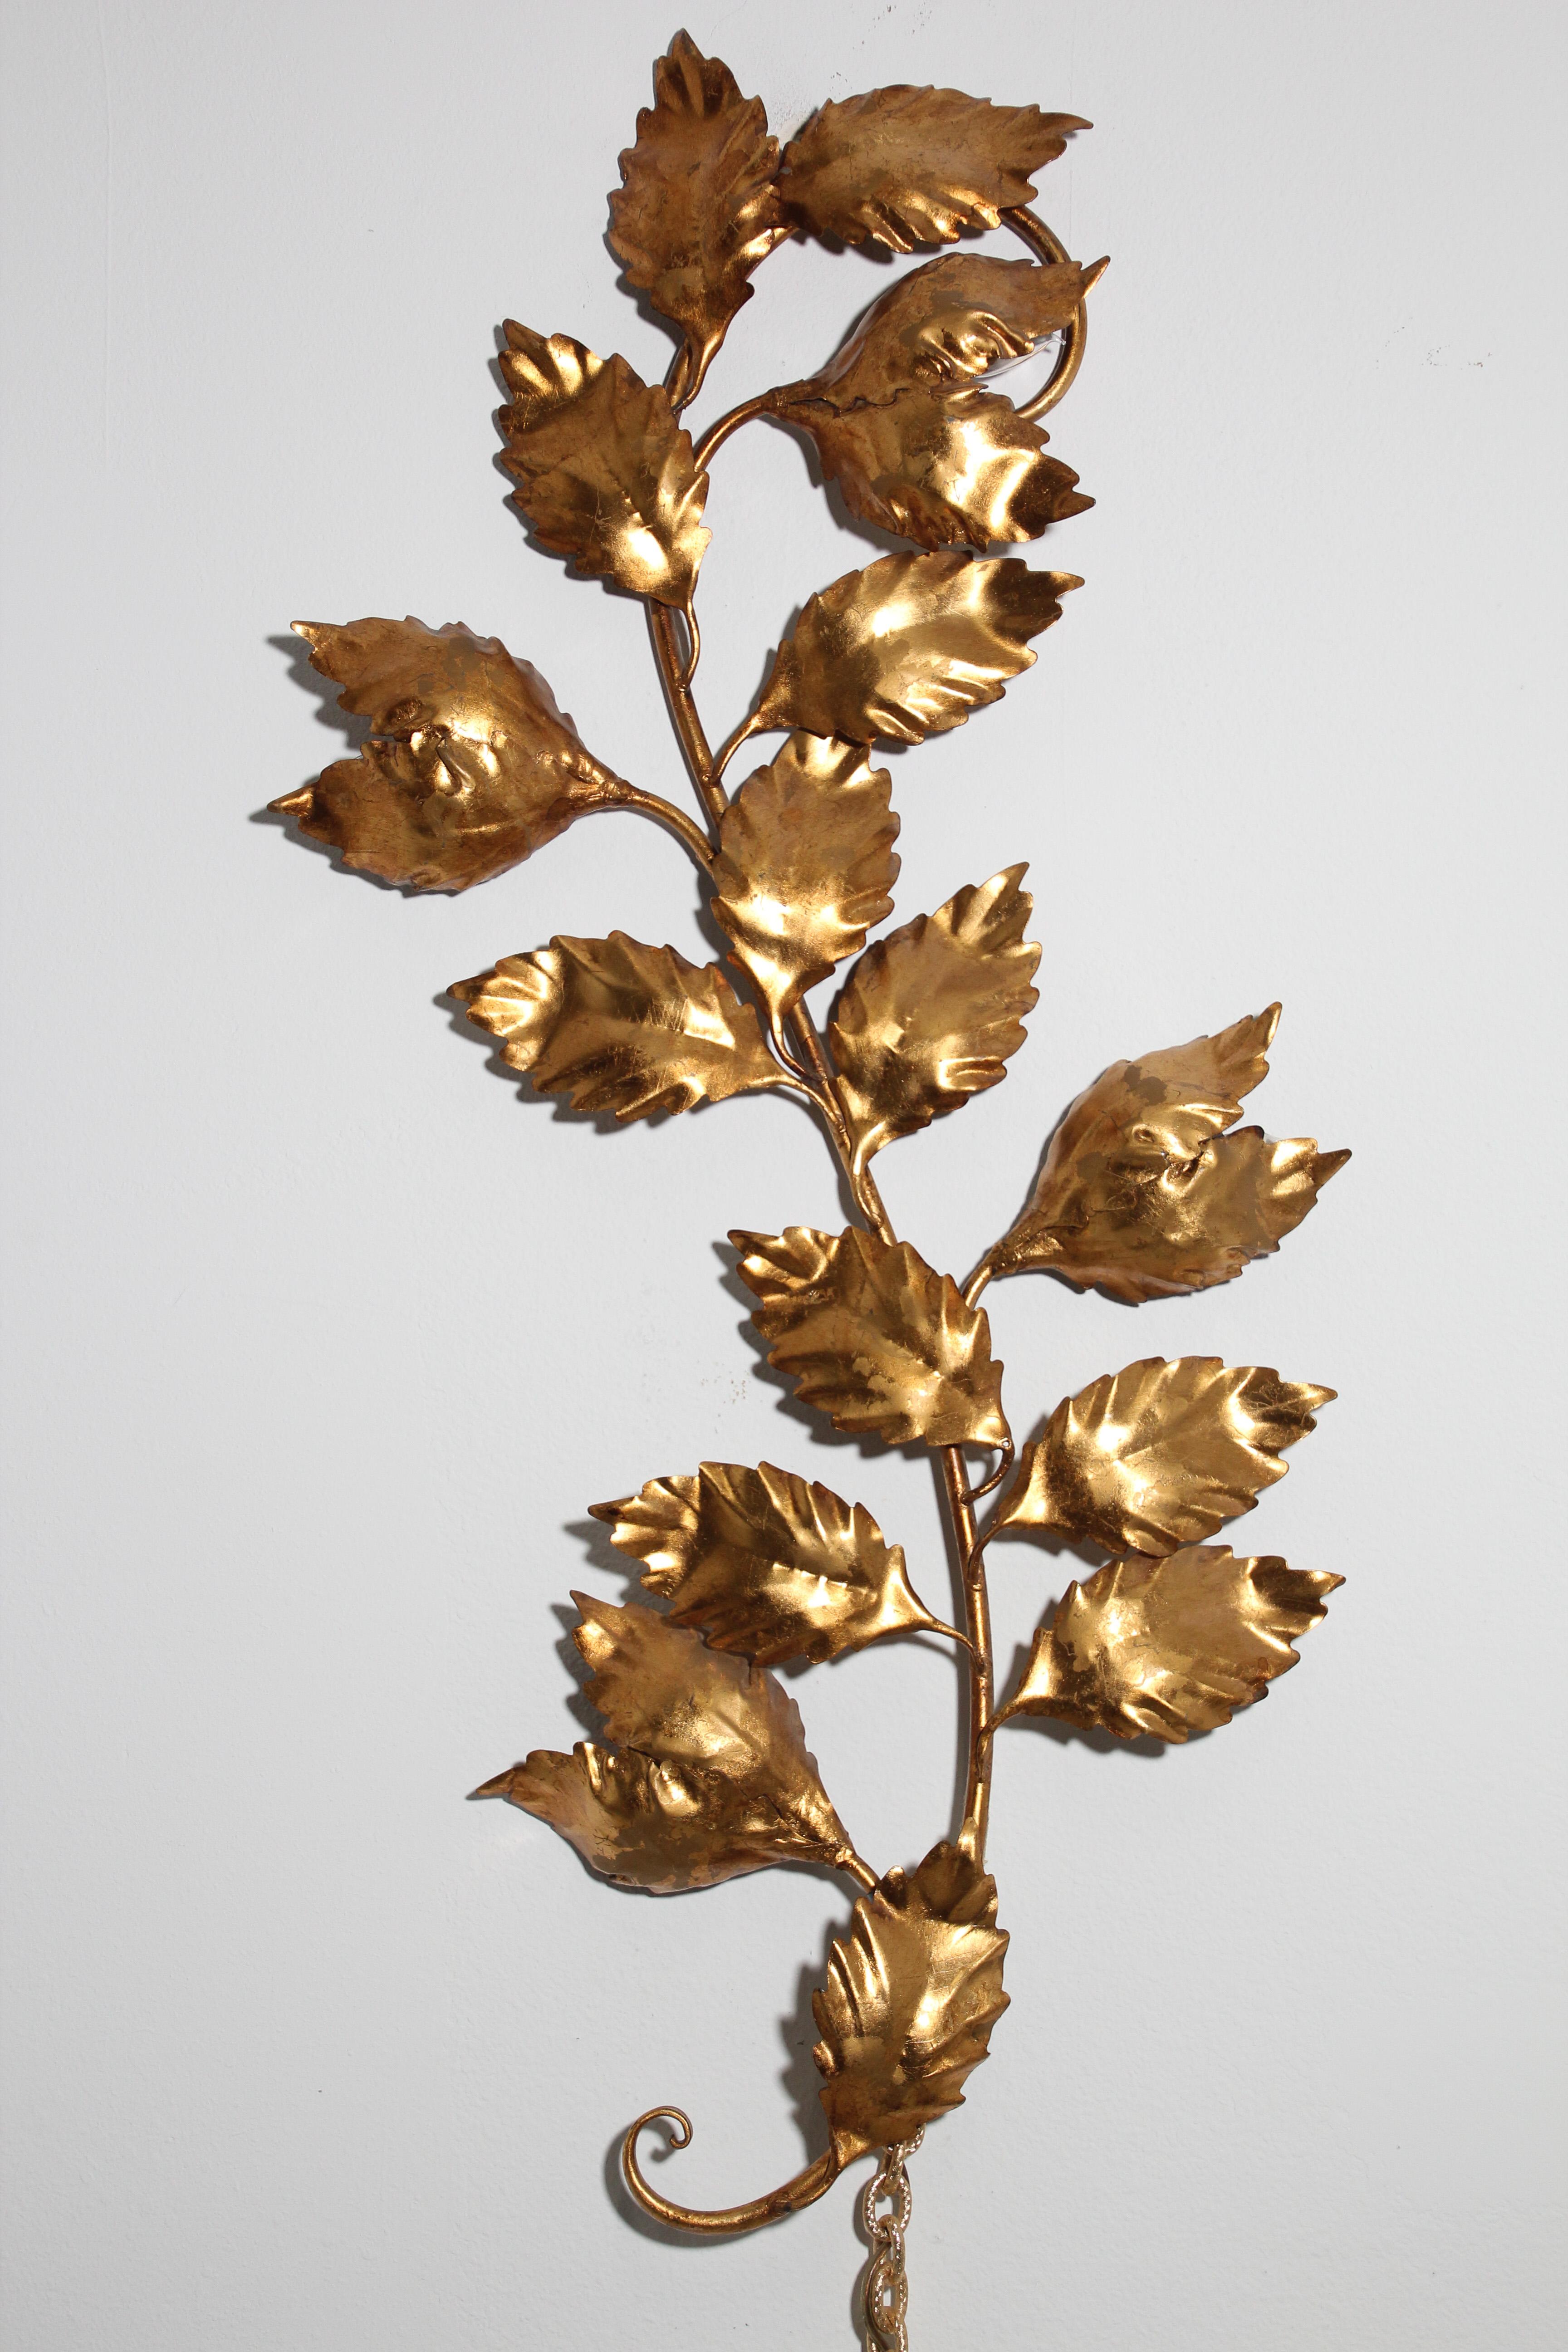 Une applique murale italienne des années 1960 en métal doré Hollywood Regency en forme de branche avec des feuilles.
Cette grande applique décorative en feuille d'or est une pièce maîtresse idéale pour un intérieur traditionnel ou contemporain,